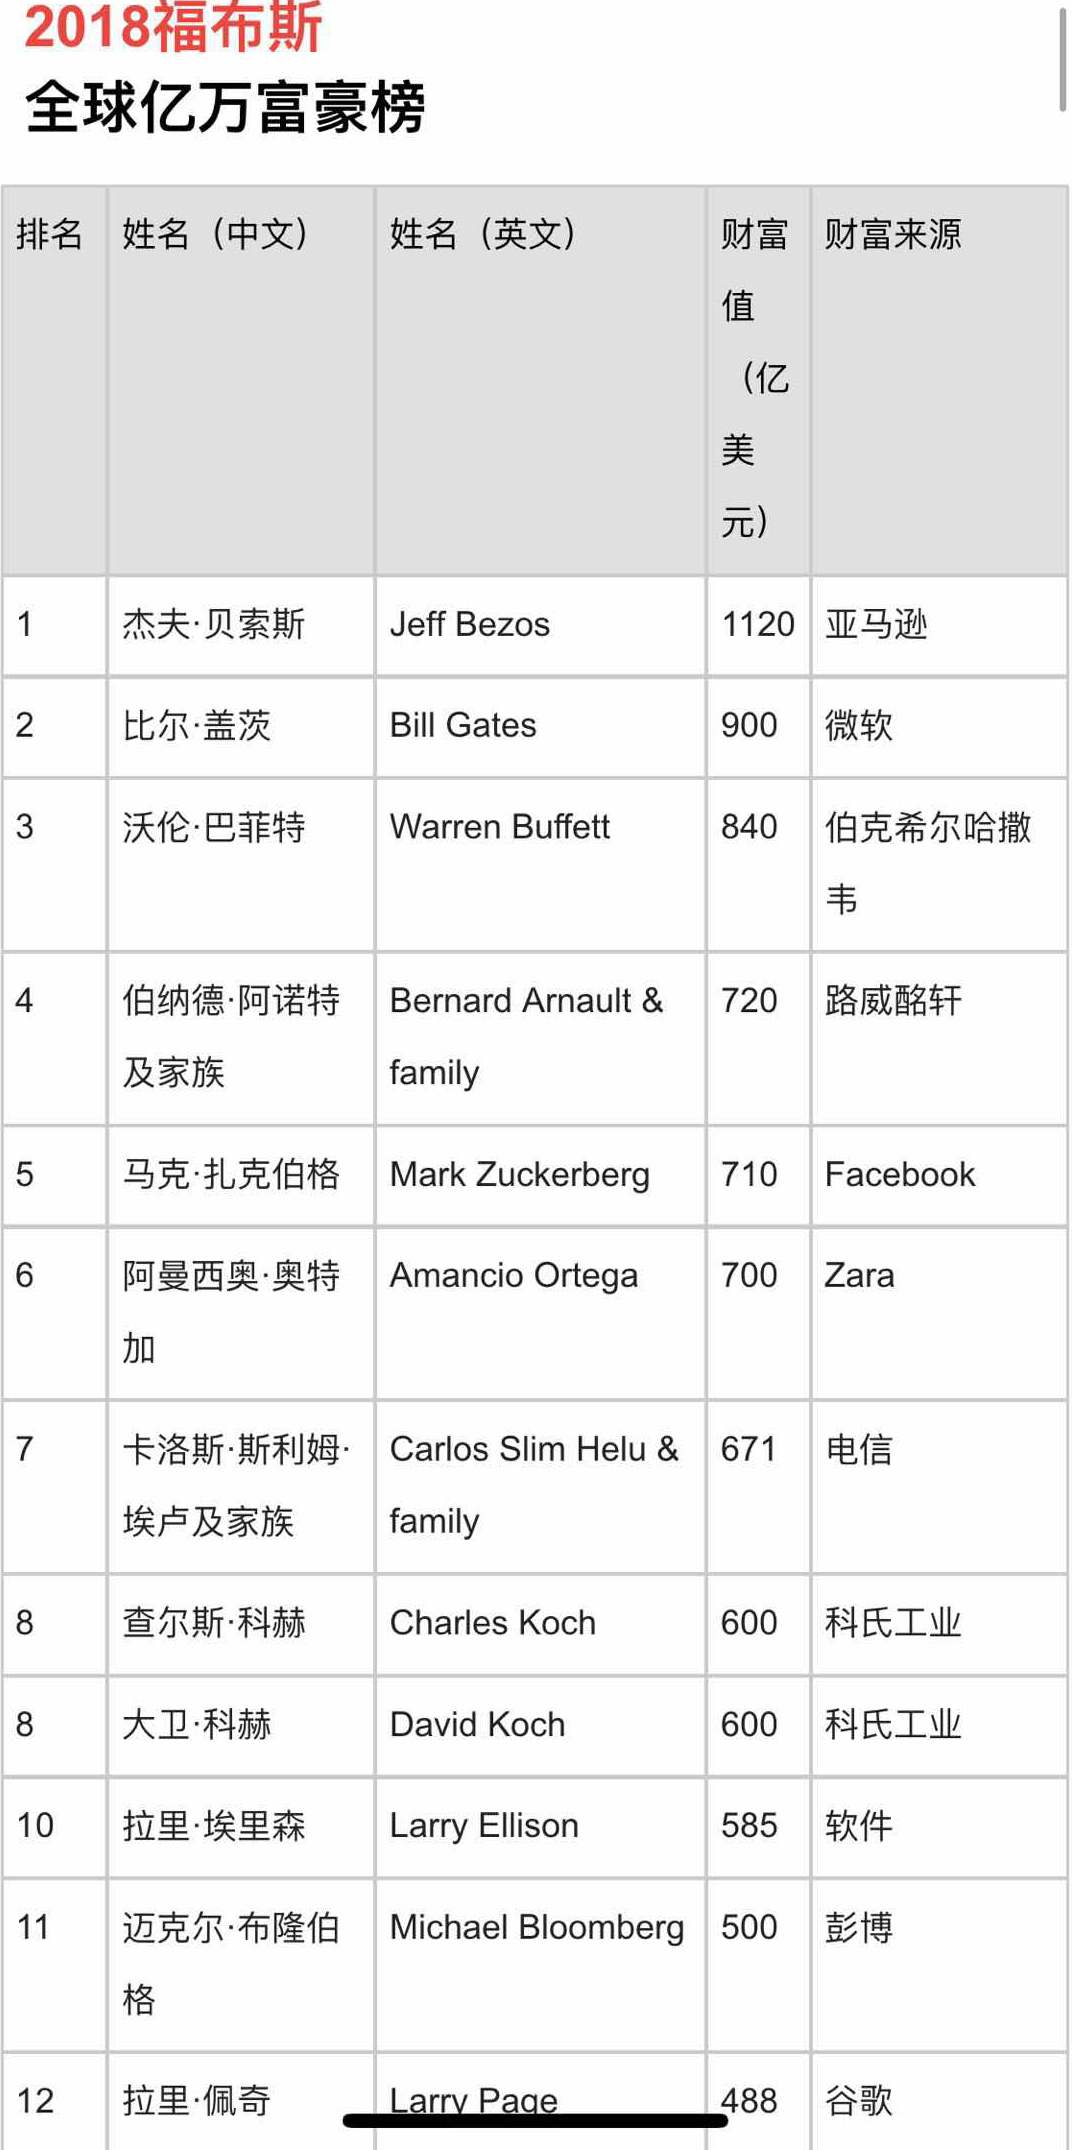 中国姓名排行榜_中国重名最多的姓名排行榜出炉 这些 爆款 的名字有你